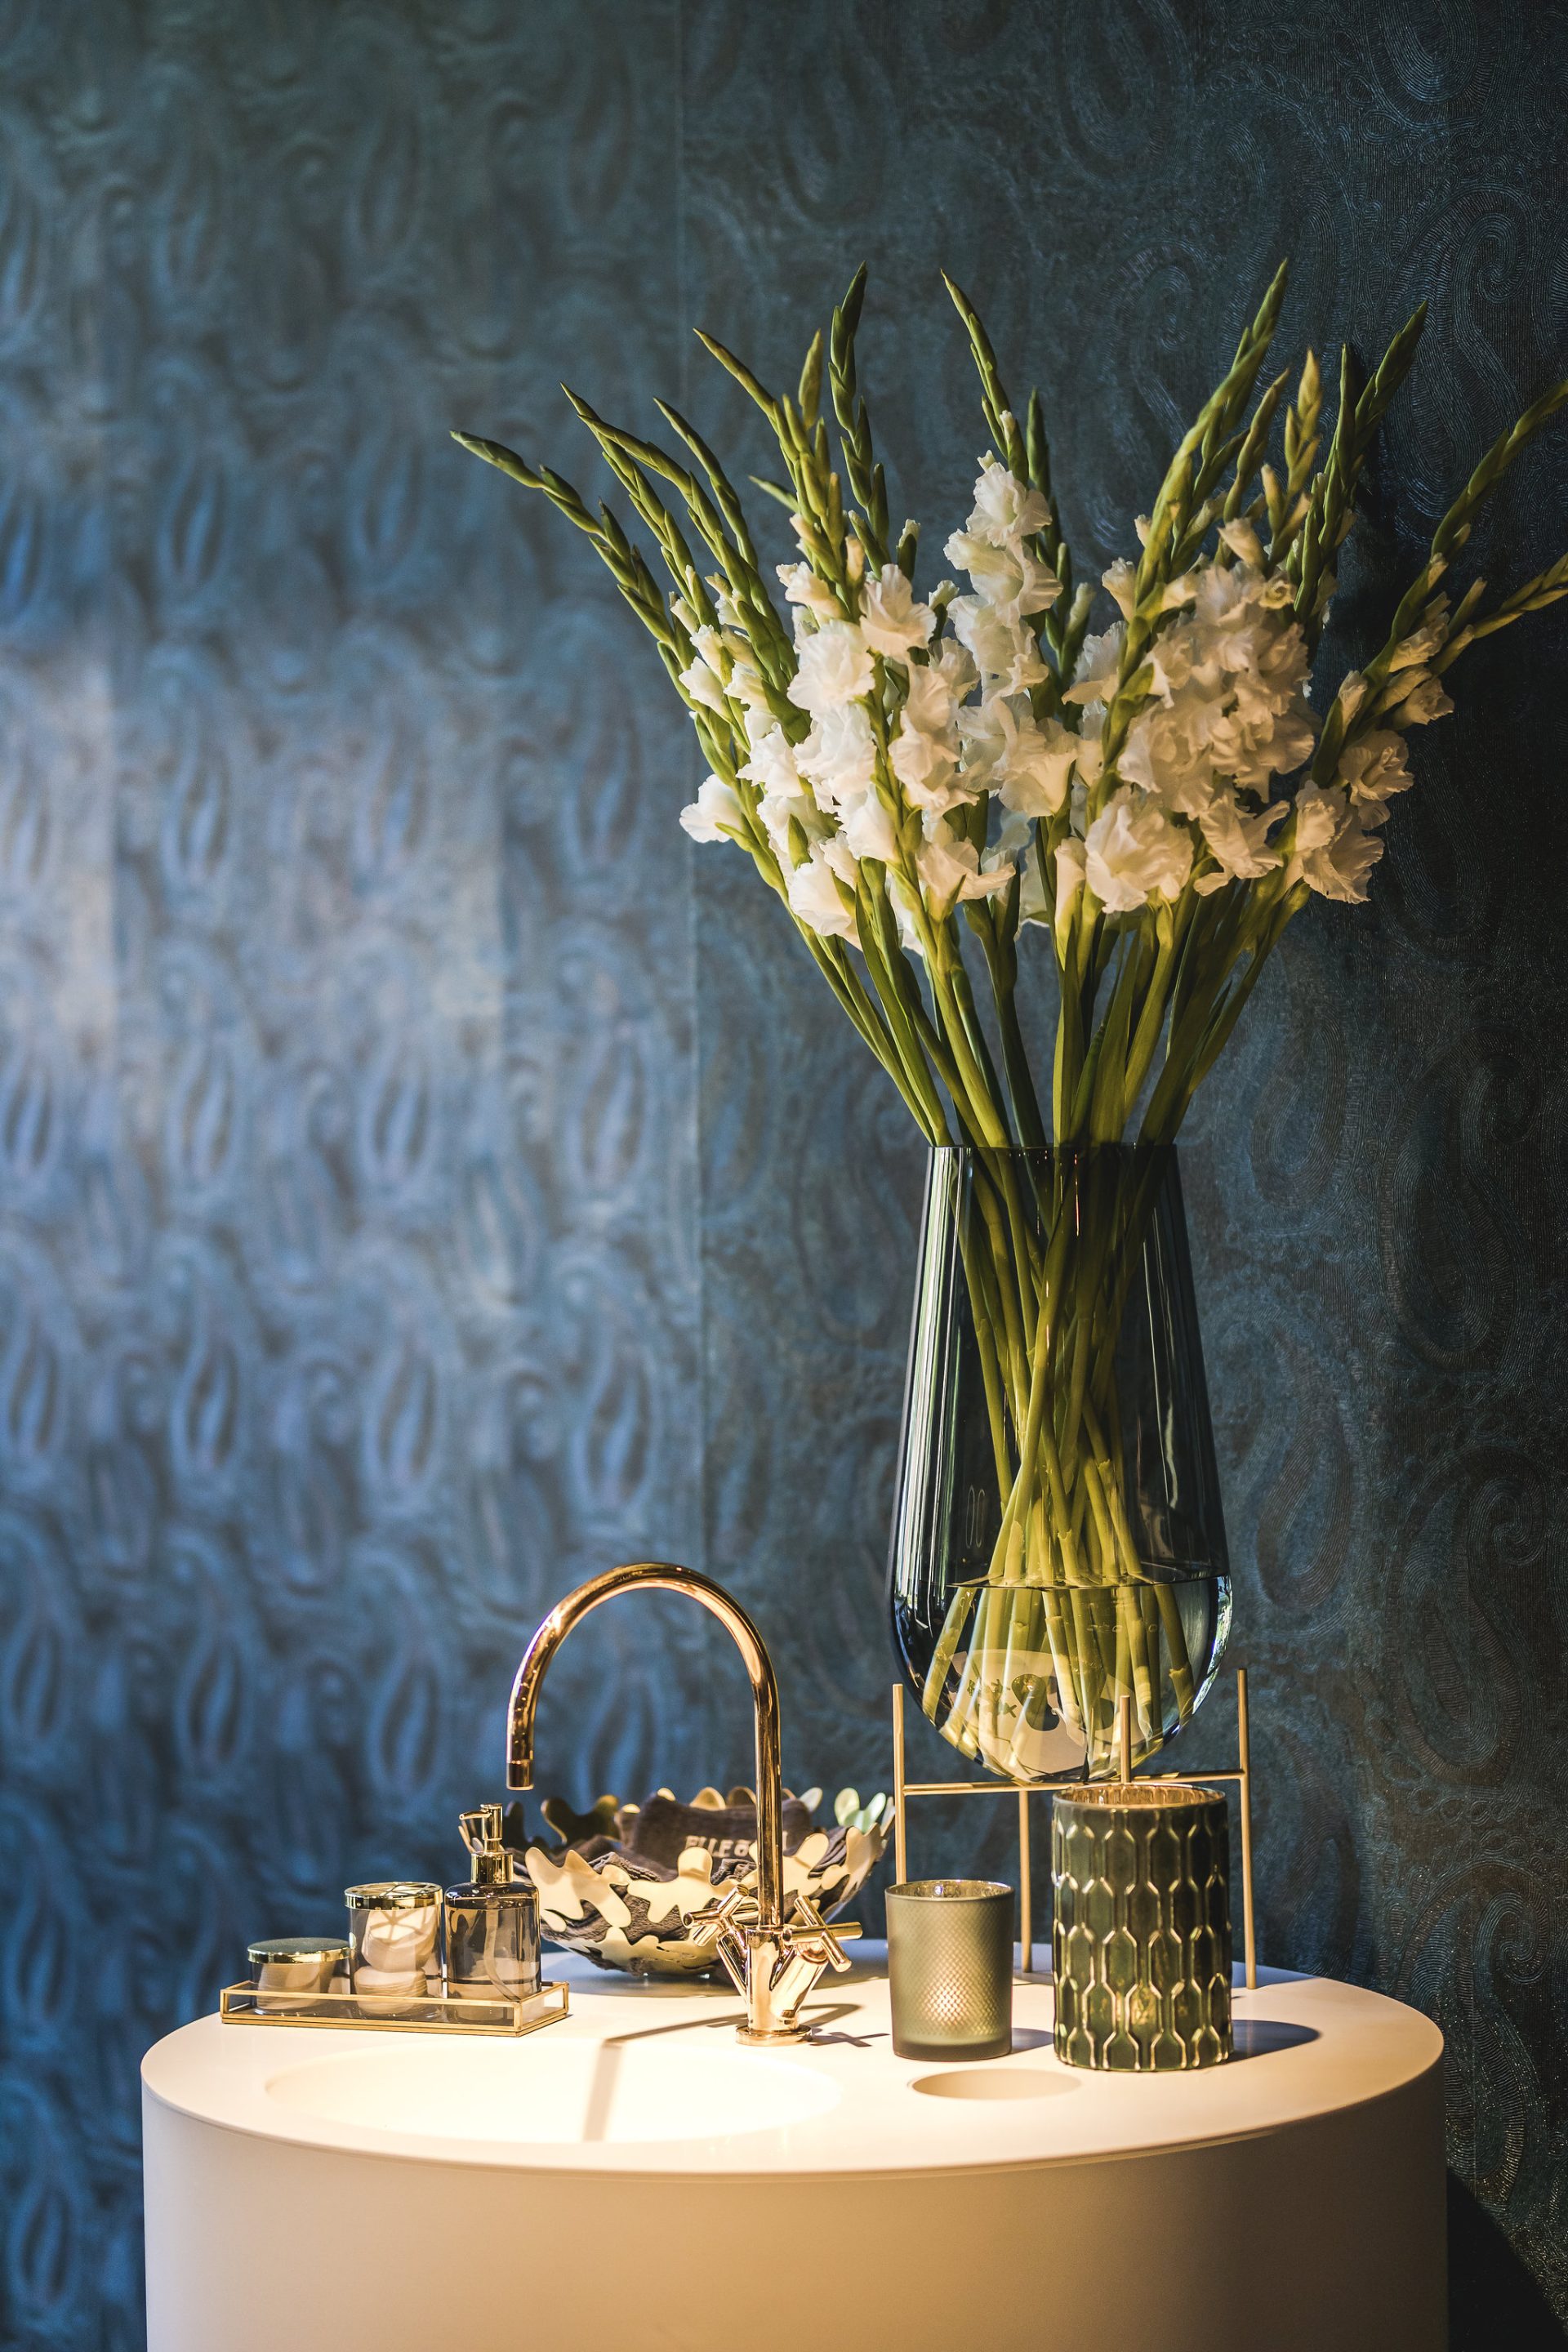 Ronde vrijstaande wastafel met gouden kraan voor een wand met blauw patroon behang. Op de wastafel staat een boeket met witte bloemen in een vaas op een gouden standaard.